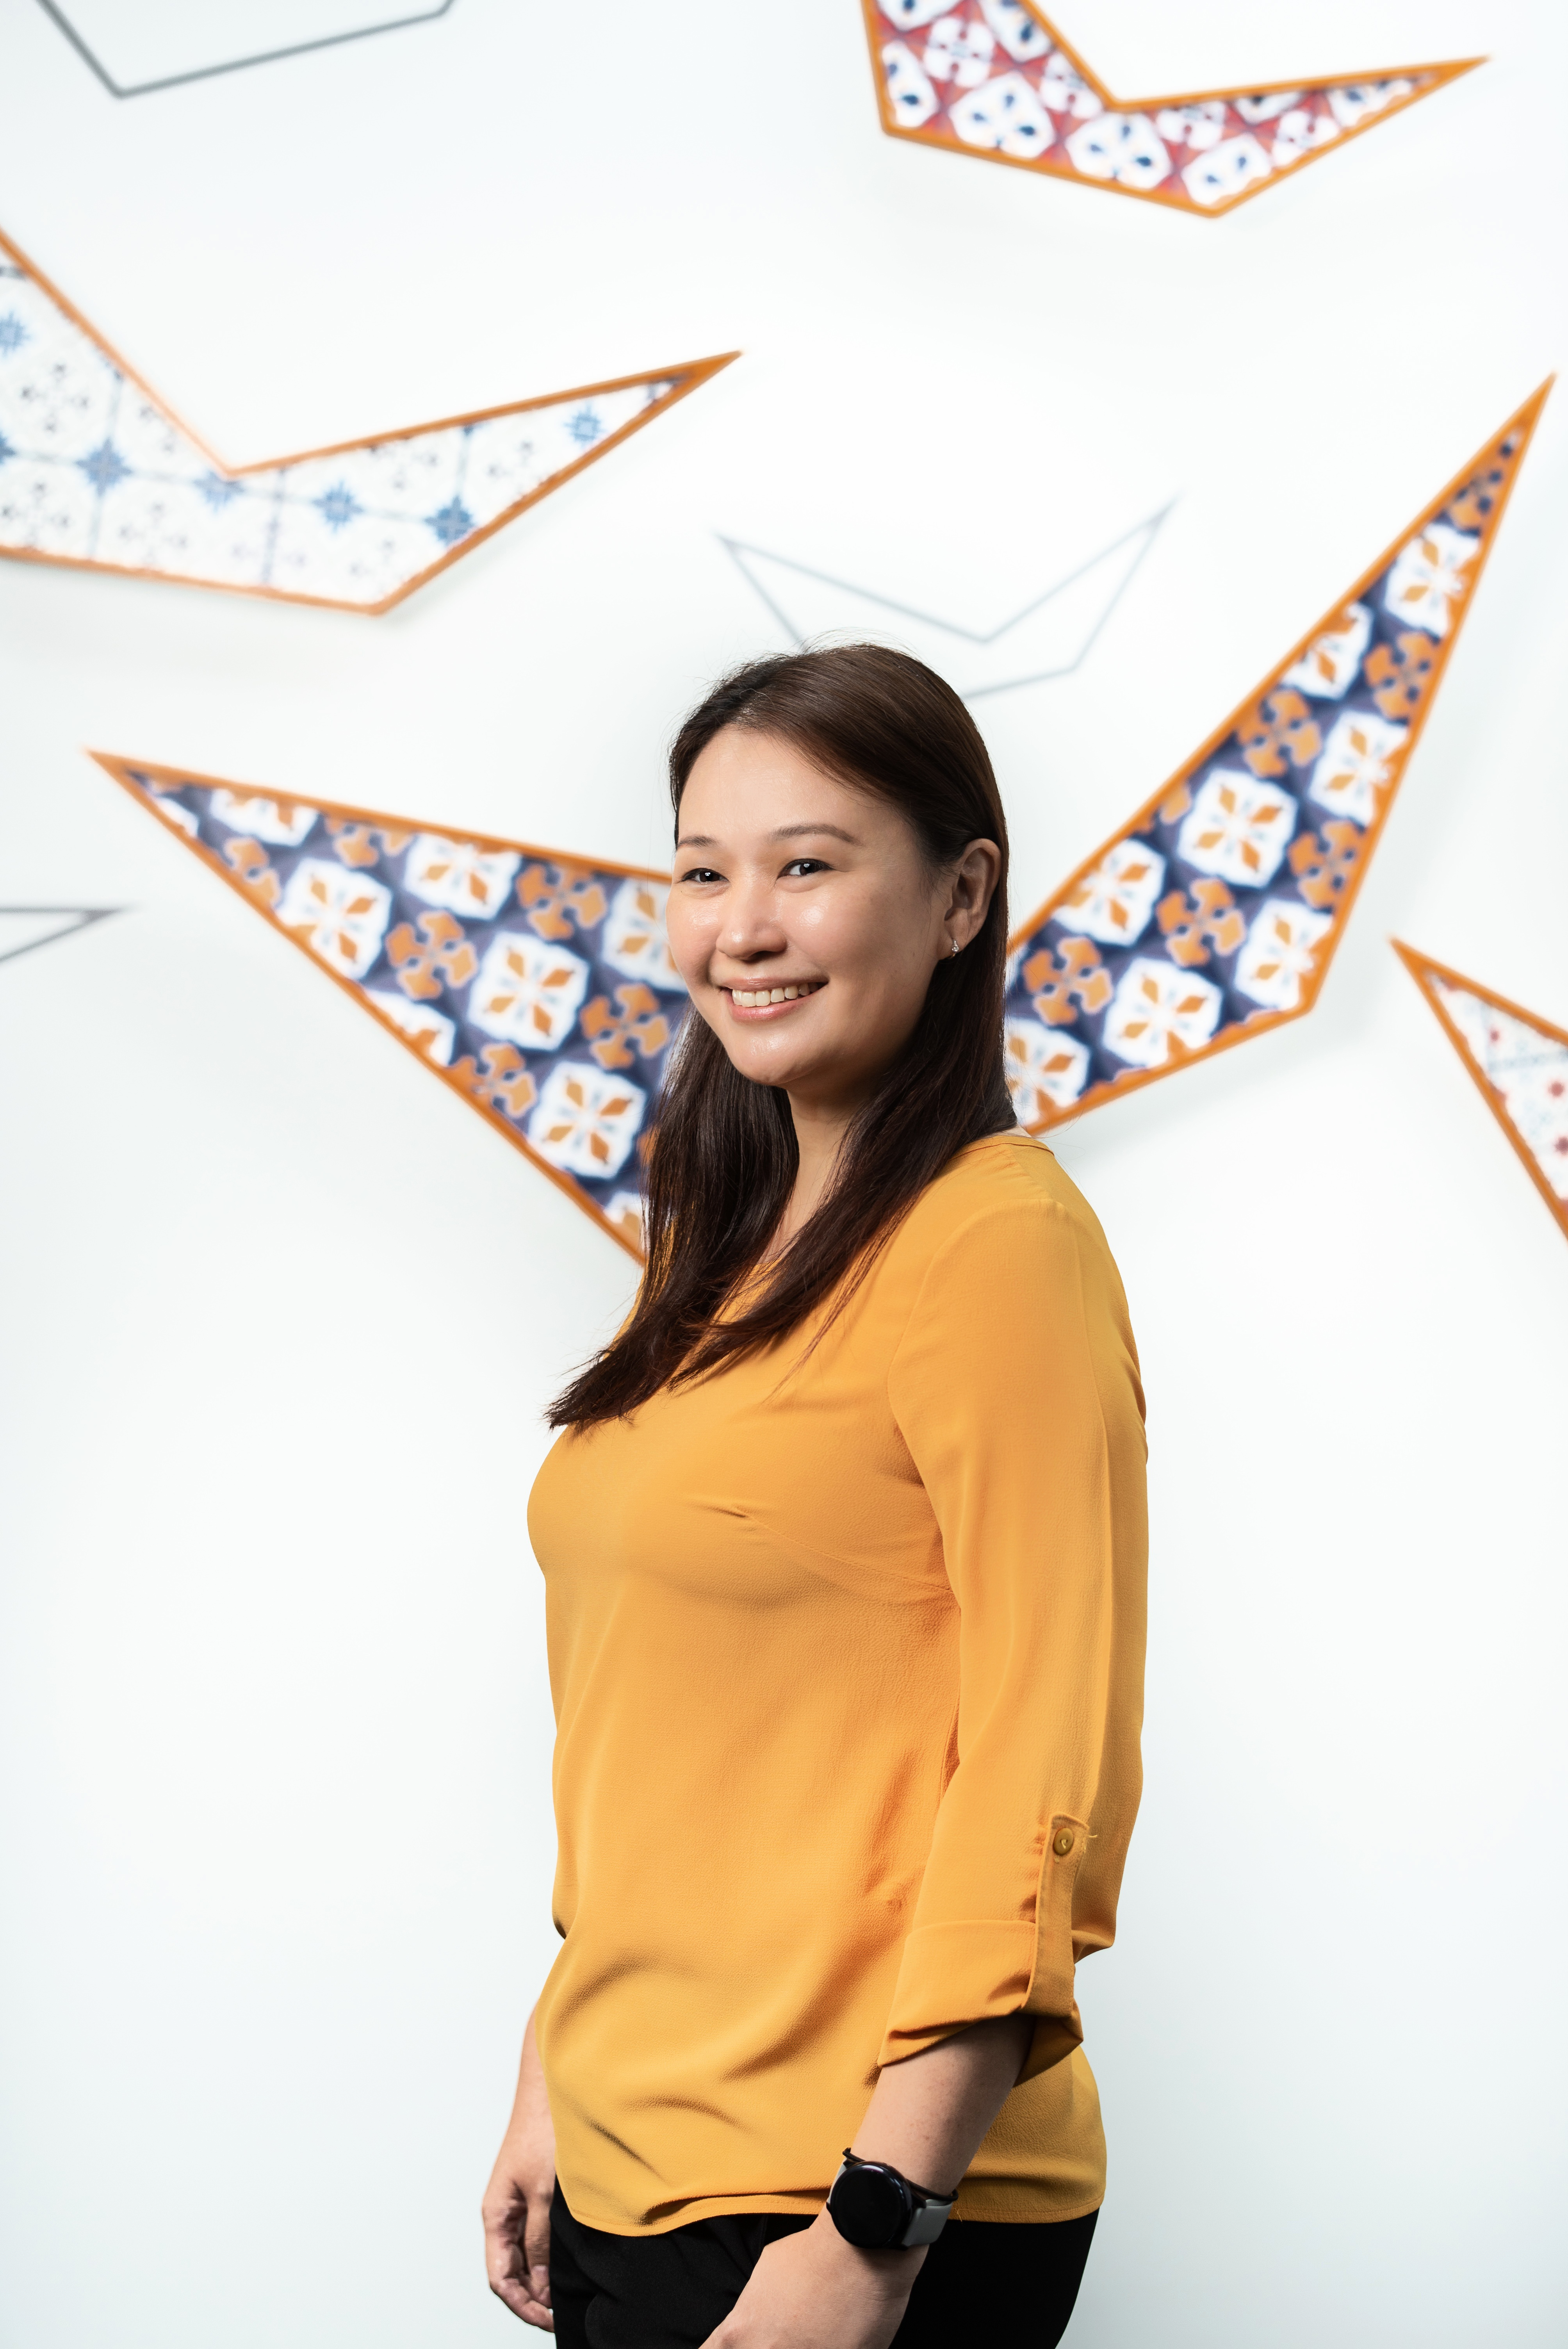 Esther New – Trưởng phòng quản lý dự án, Châu Á – Thái Bình Dương